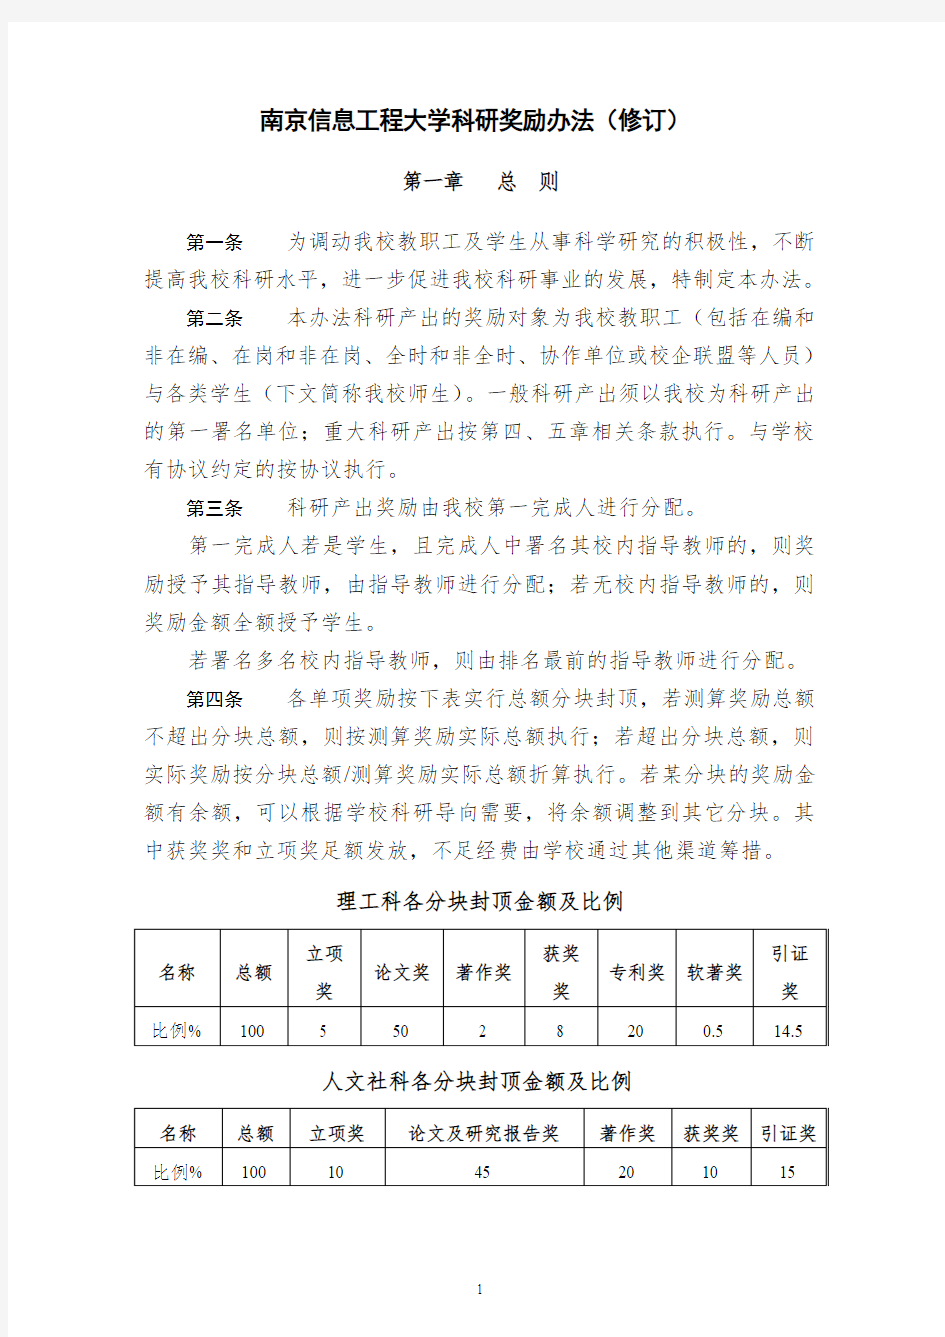 南京信息工程大学科研奖励办法修订